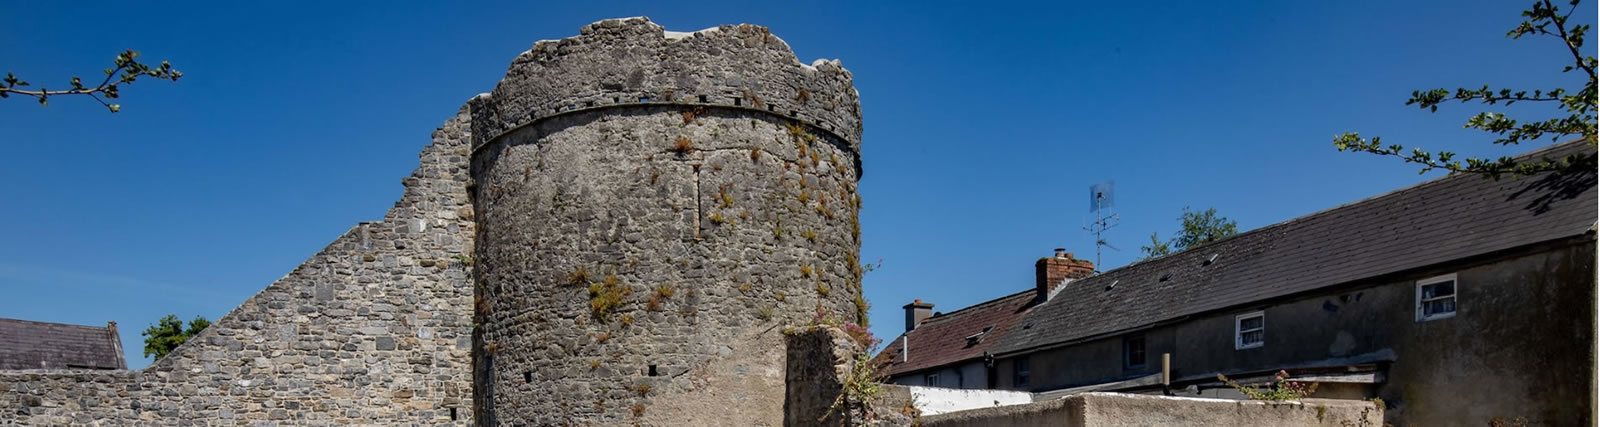 Muralhas da cidade de Kilkenny da torre de Talbots